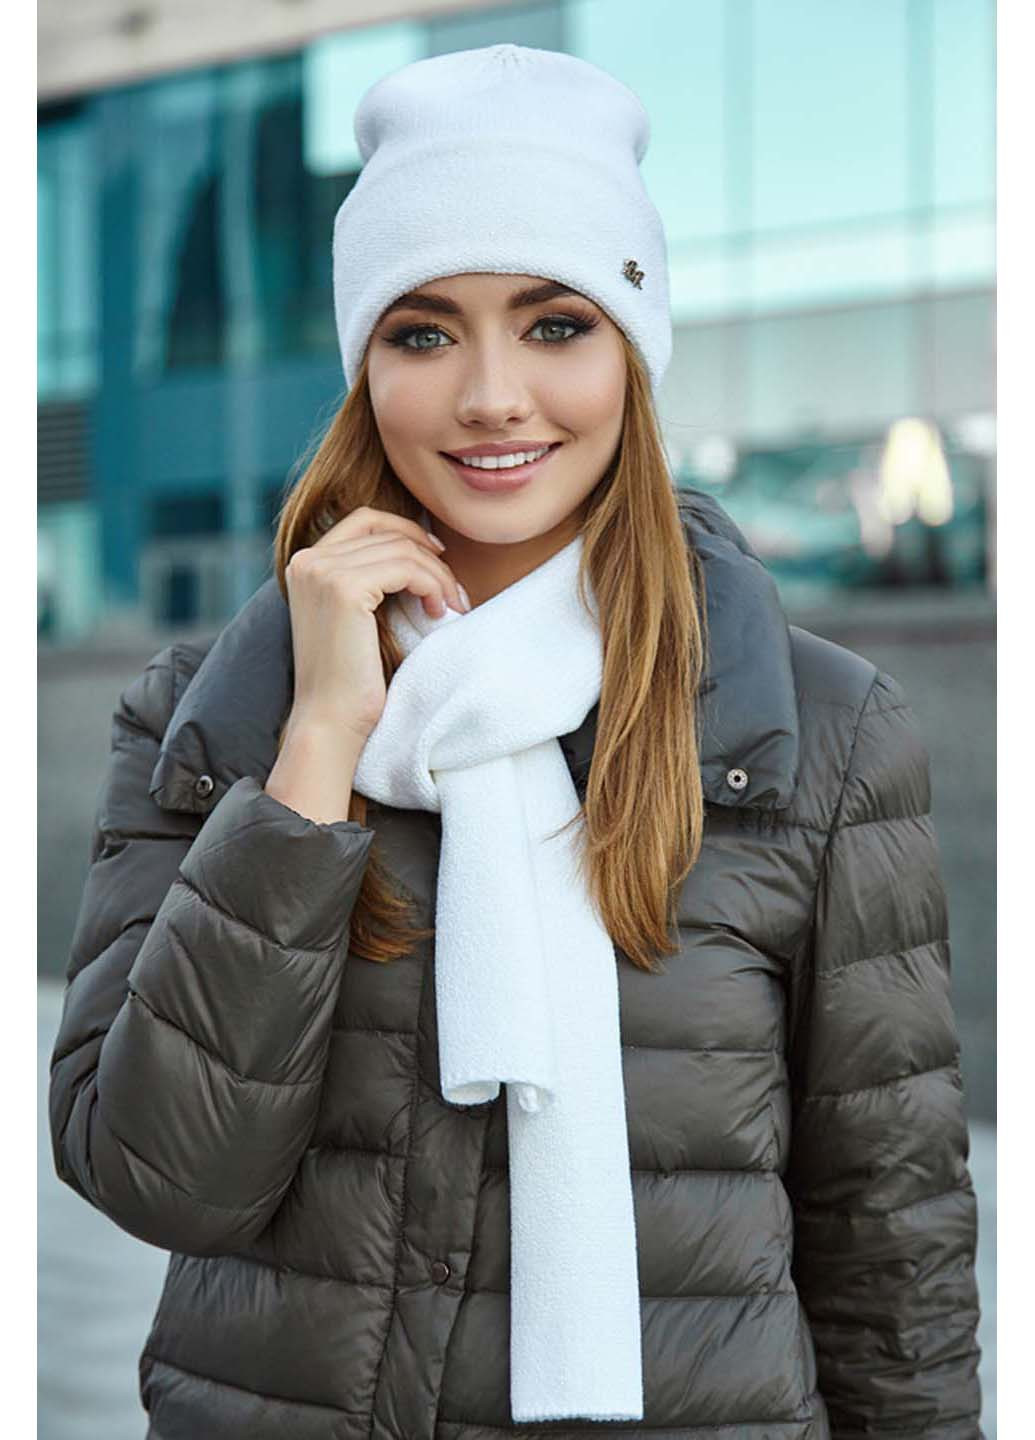 Комплект (шапка, шарф) Braxton шапка + шарф однотонные белые кэжуалы полиамид, акрил